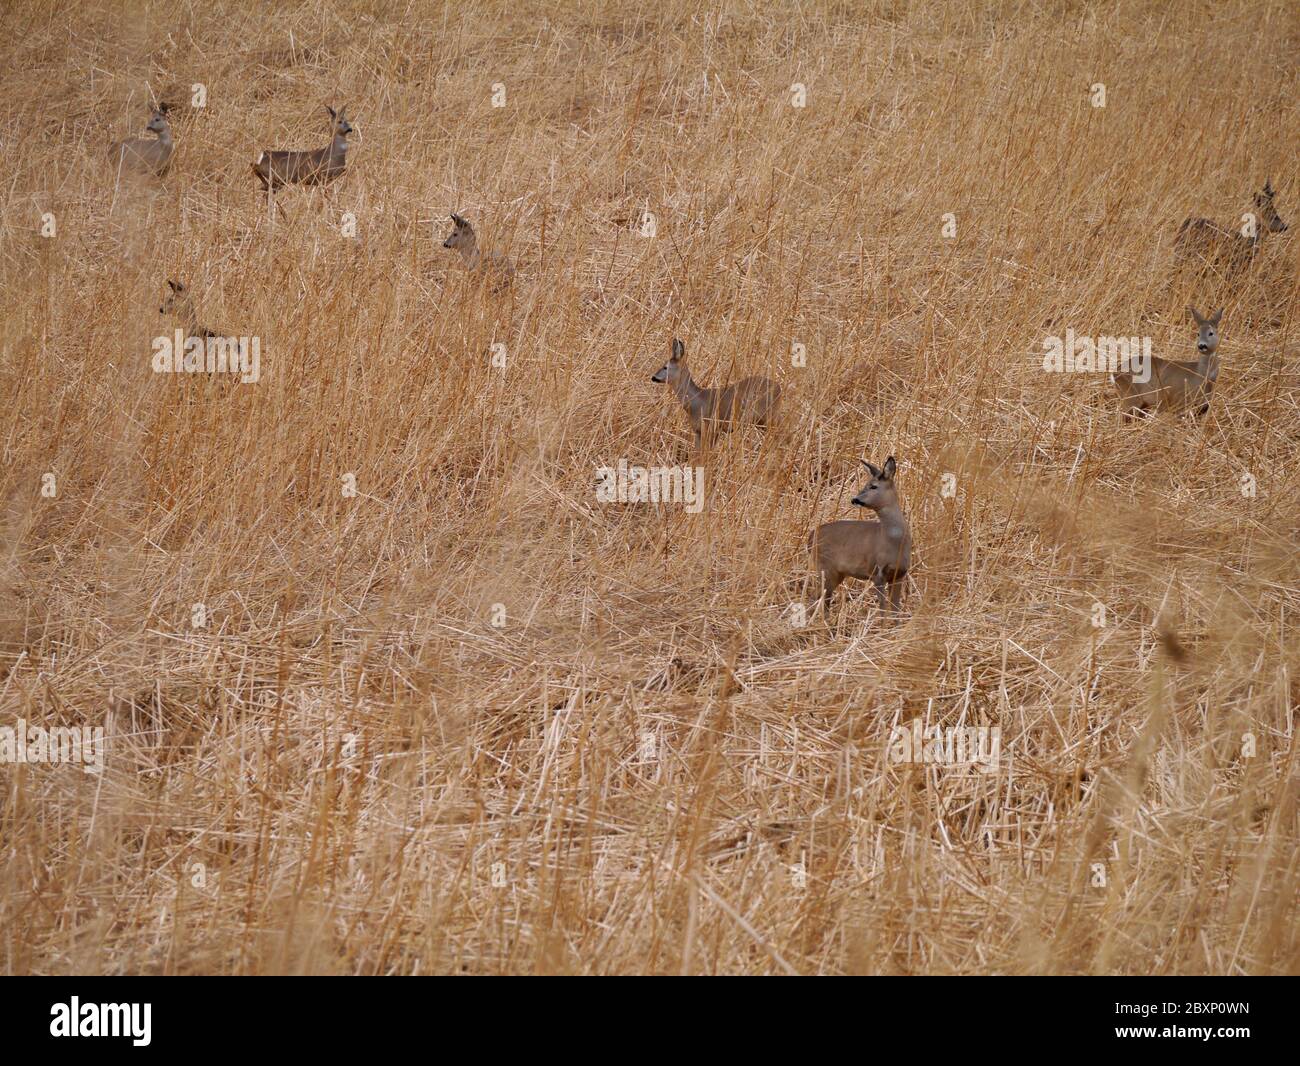 European roe deer in a field Stock Photo